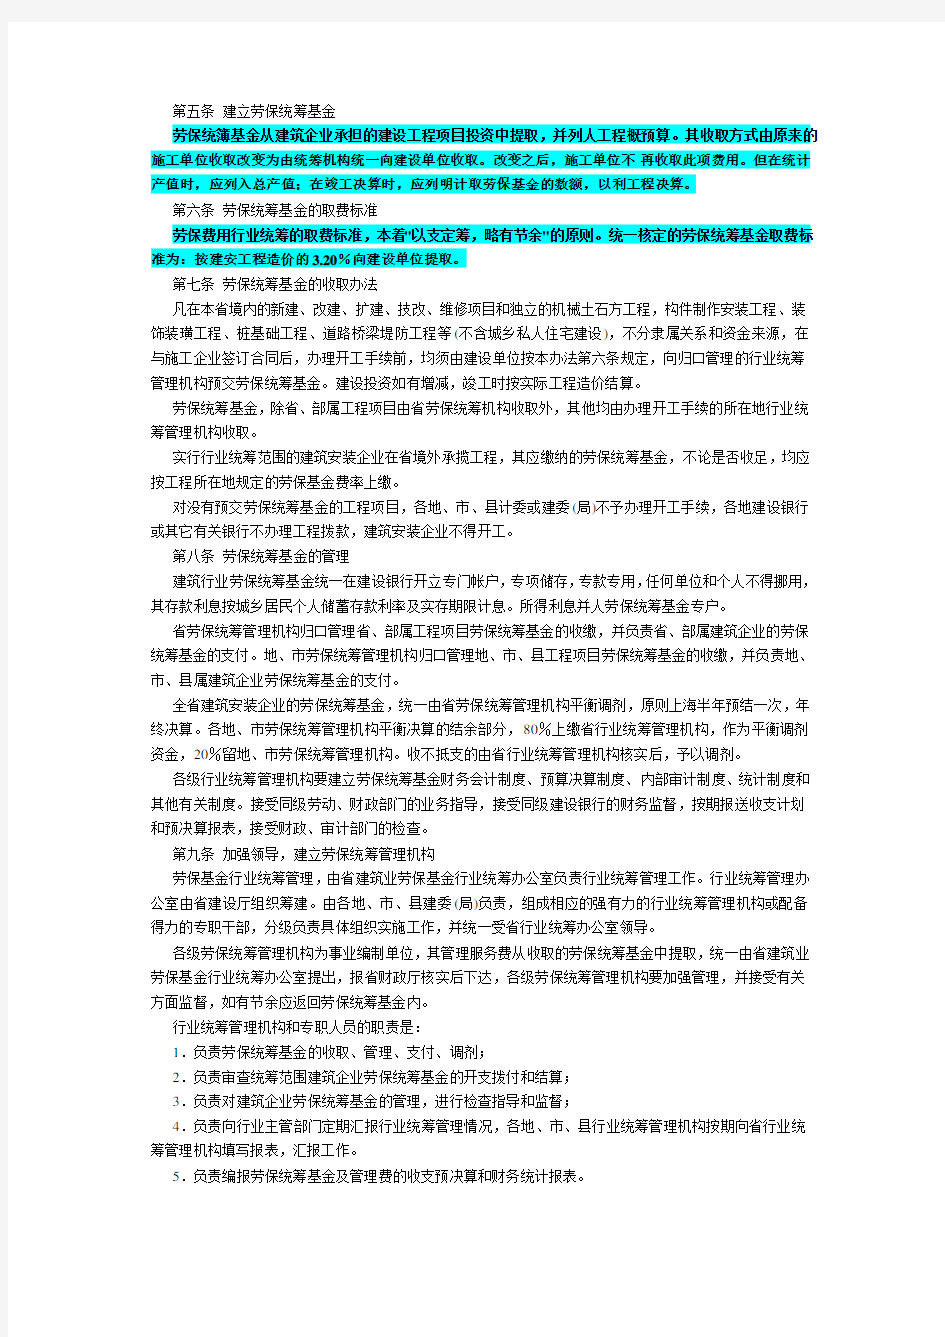 关于发布《陕西省建筑业劳动保险费用行业统筹管理办法》